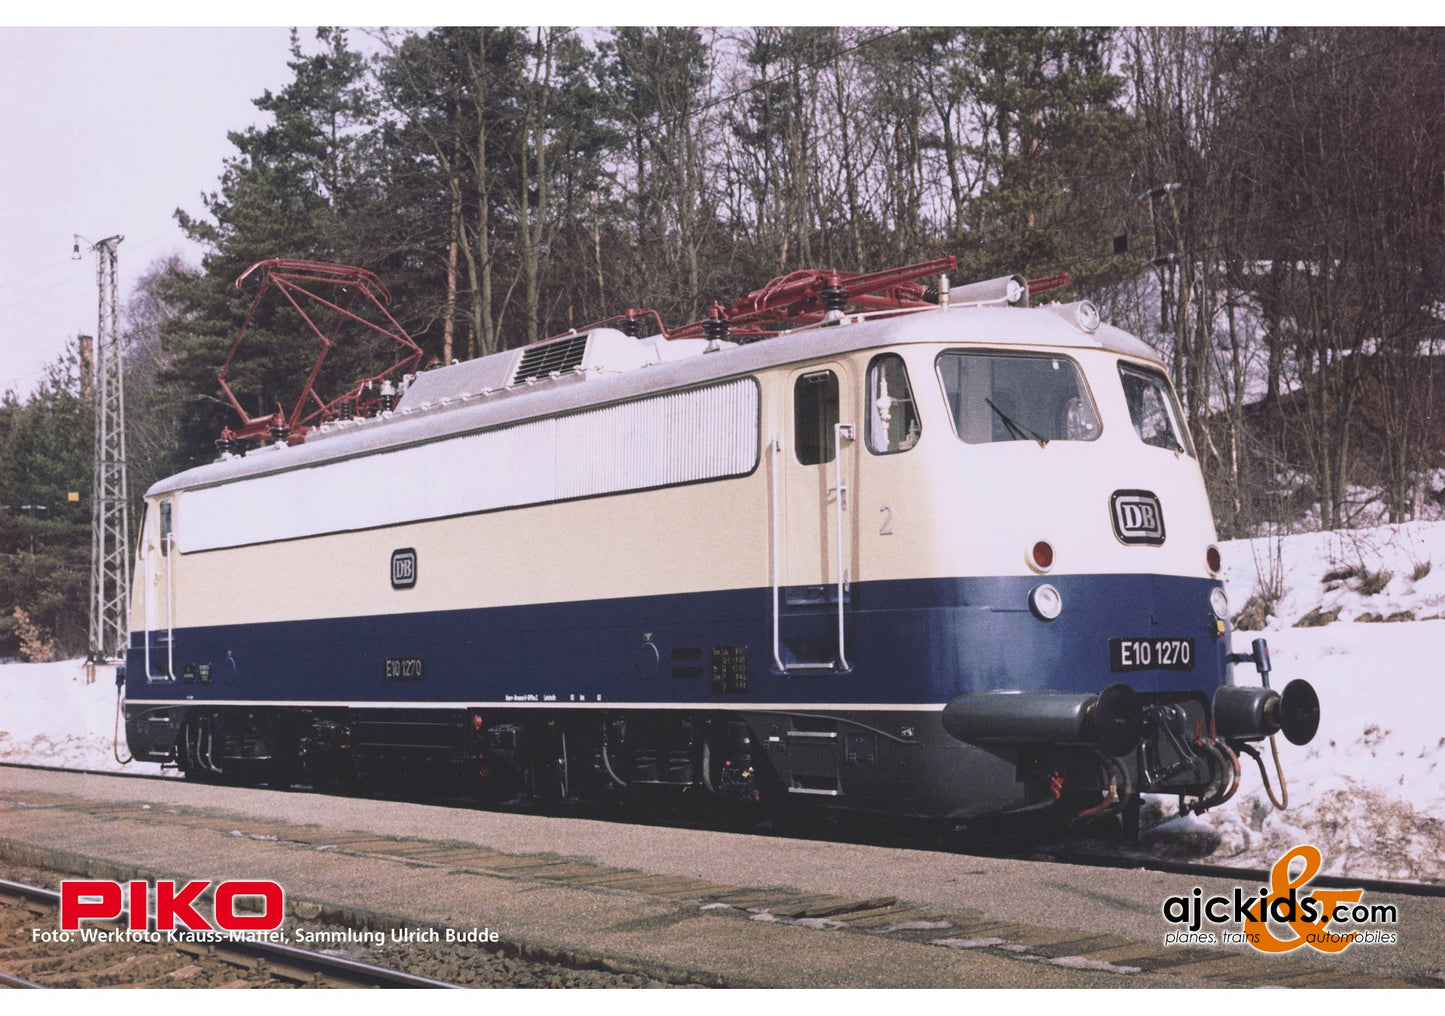 Piko 51812 - E10 1270 Electric Locomotive DB III